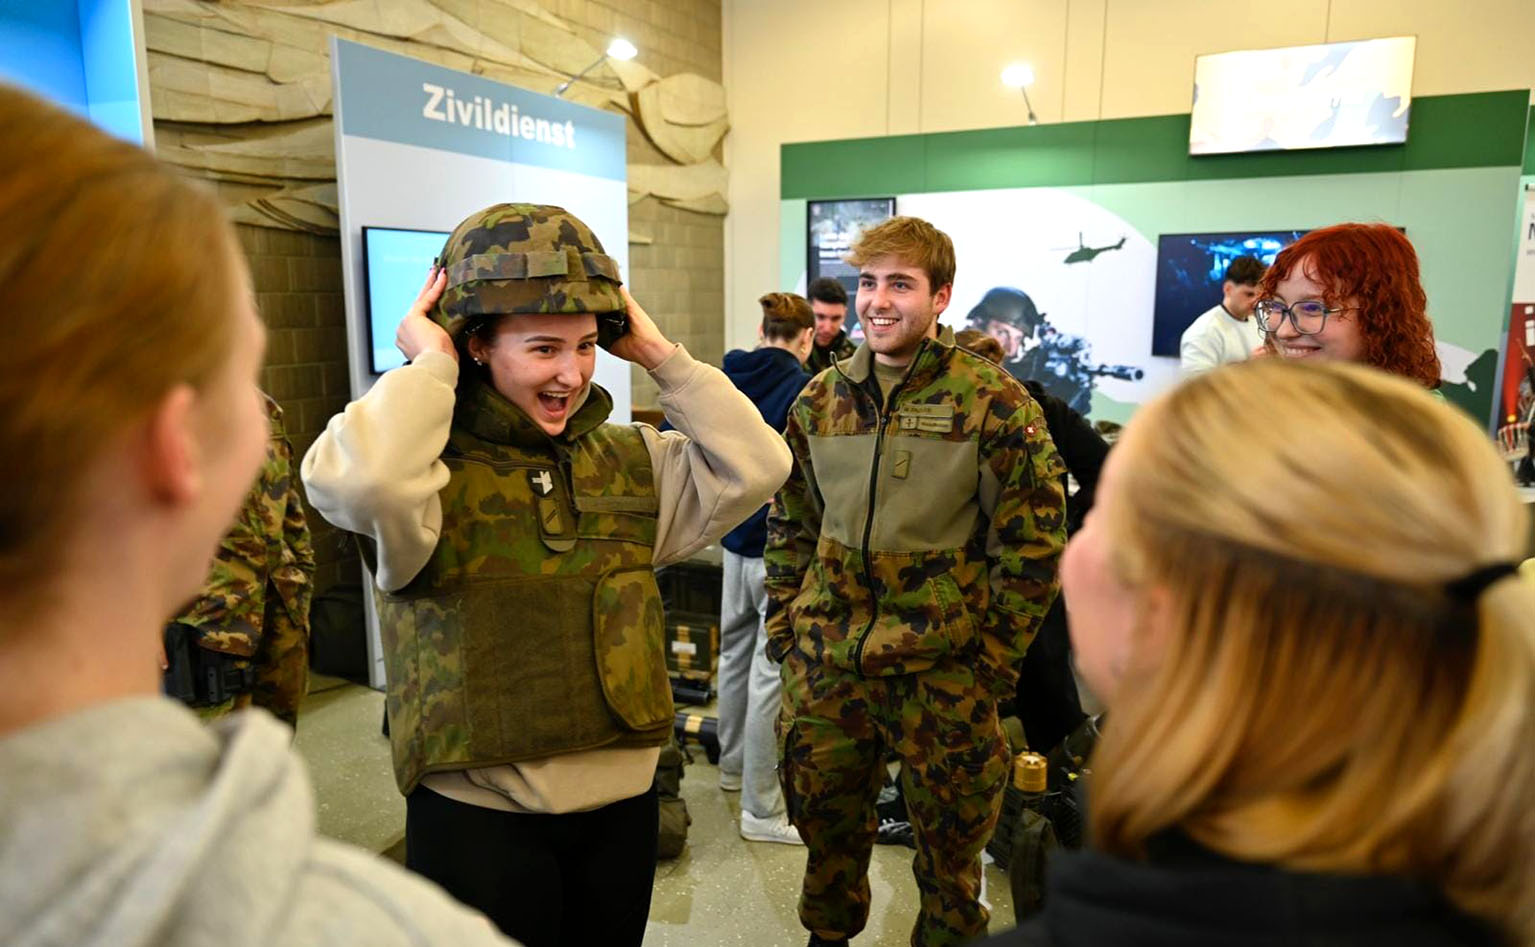 Eine Frau testet einen Helm der Armee und lacht. 